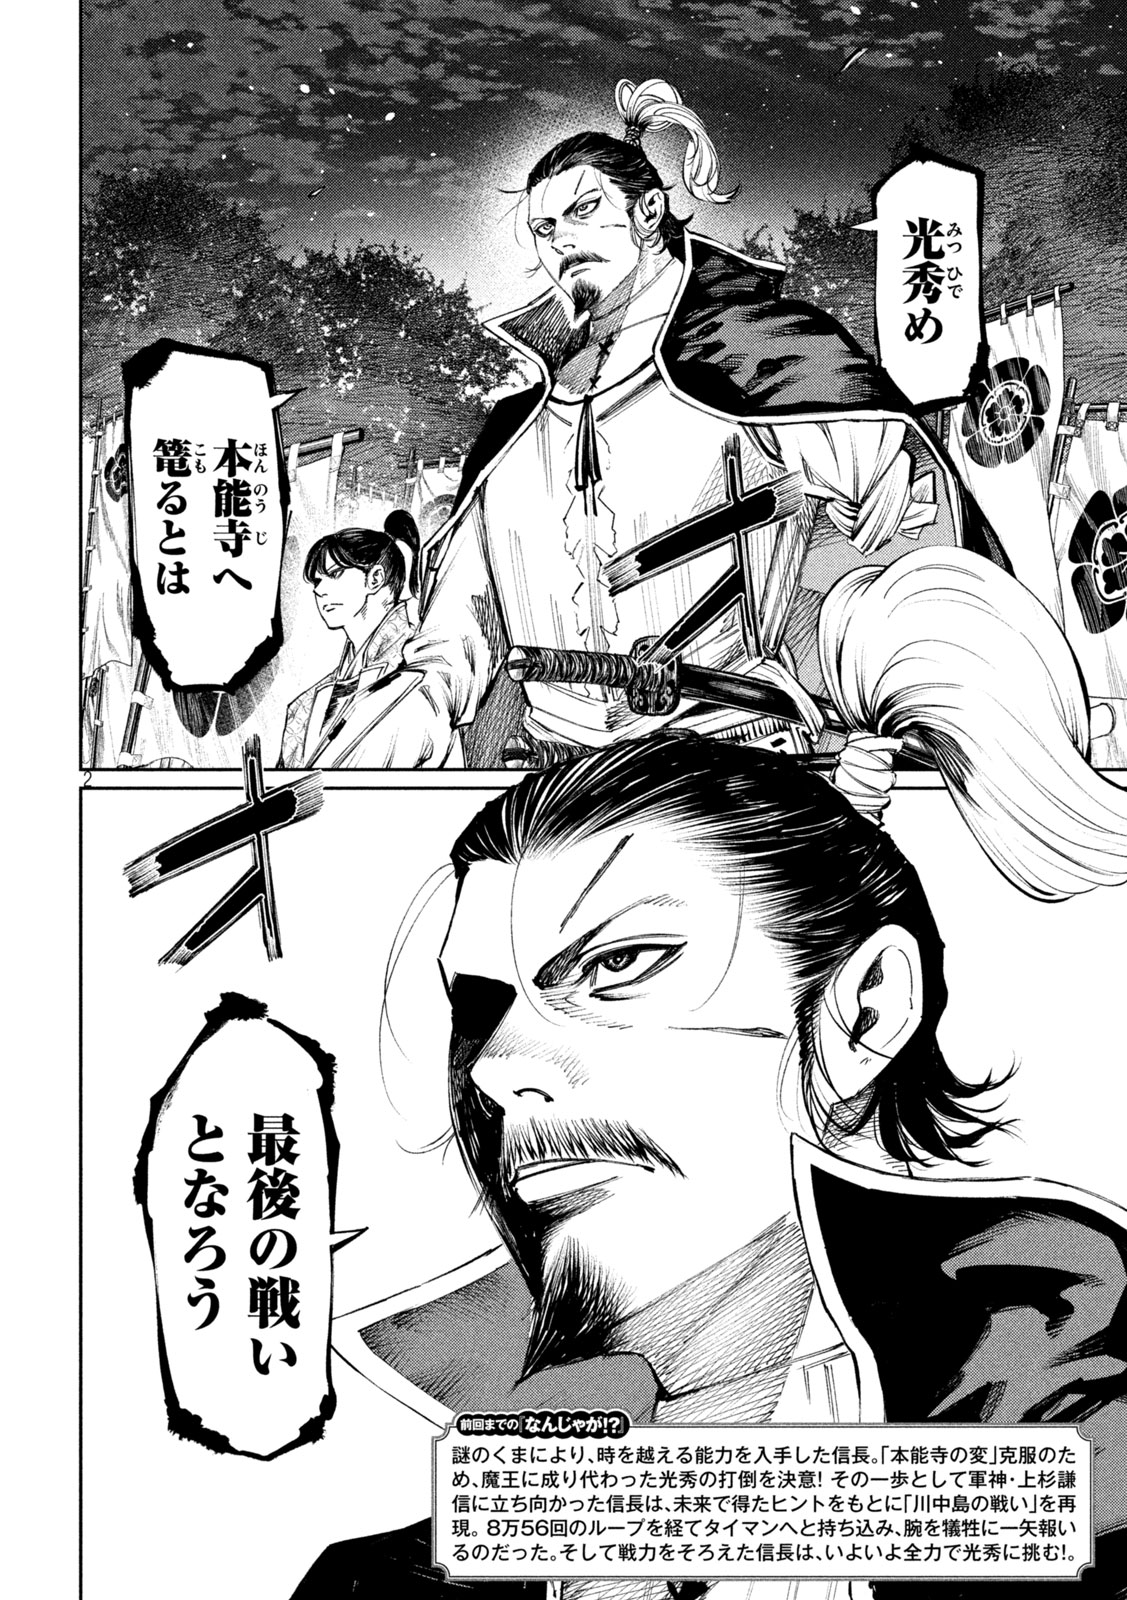 Nando toki o kurikaeshitemo Honnouji ga moerunjaga! - Chapter 114 - Page 2